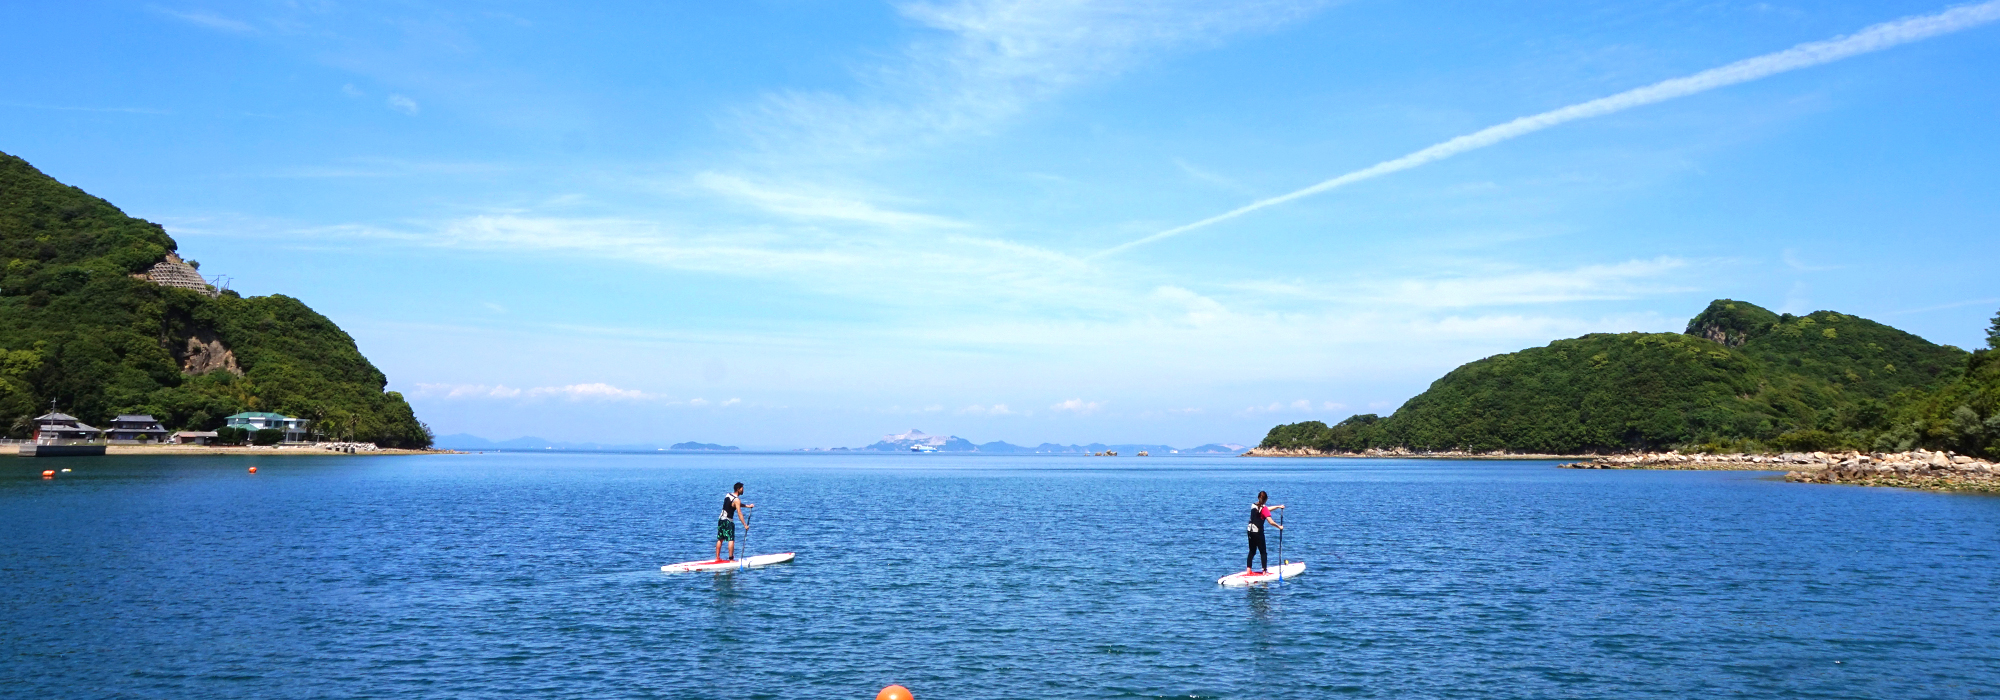 瀬戸内海の小豆島の海でアクティビティー・体験でSUPを楽しむ